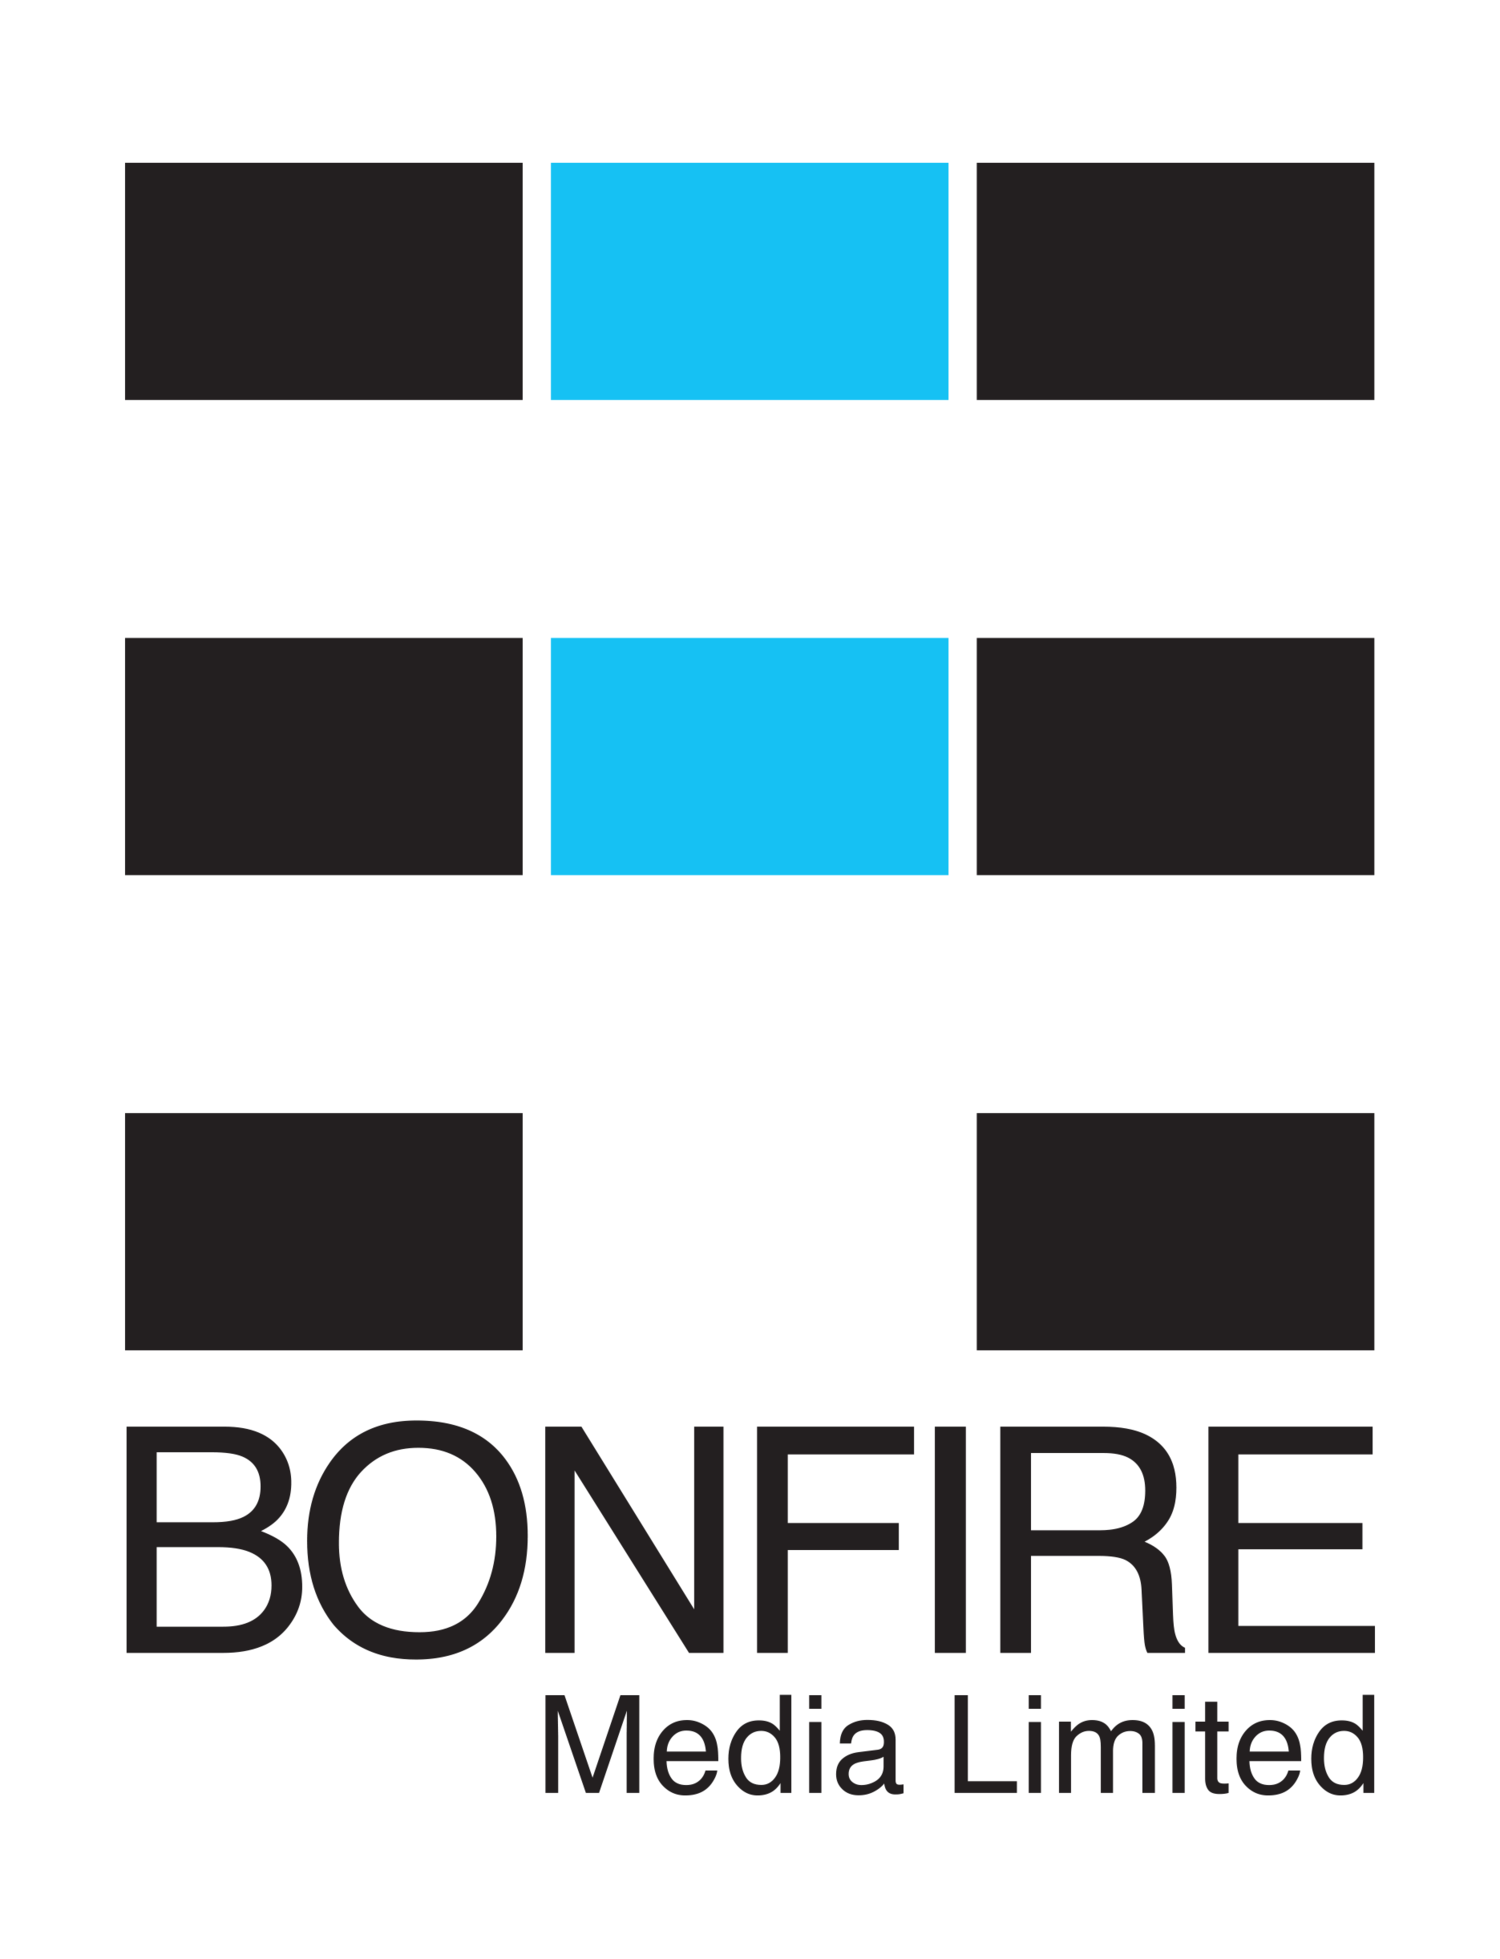 Bonfire Media